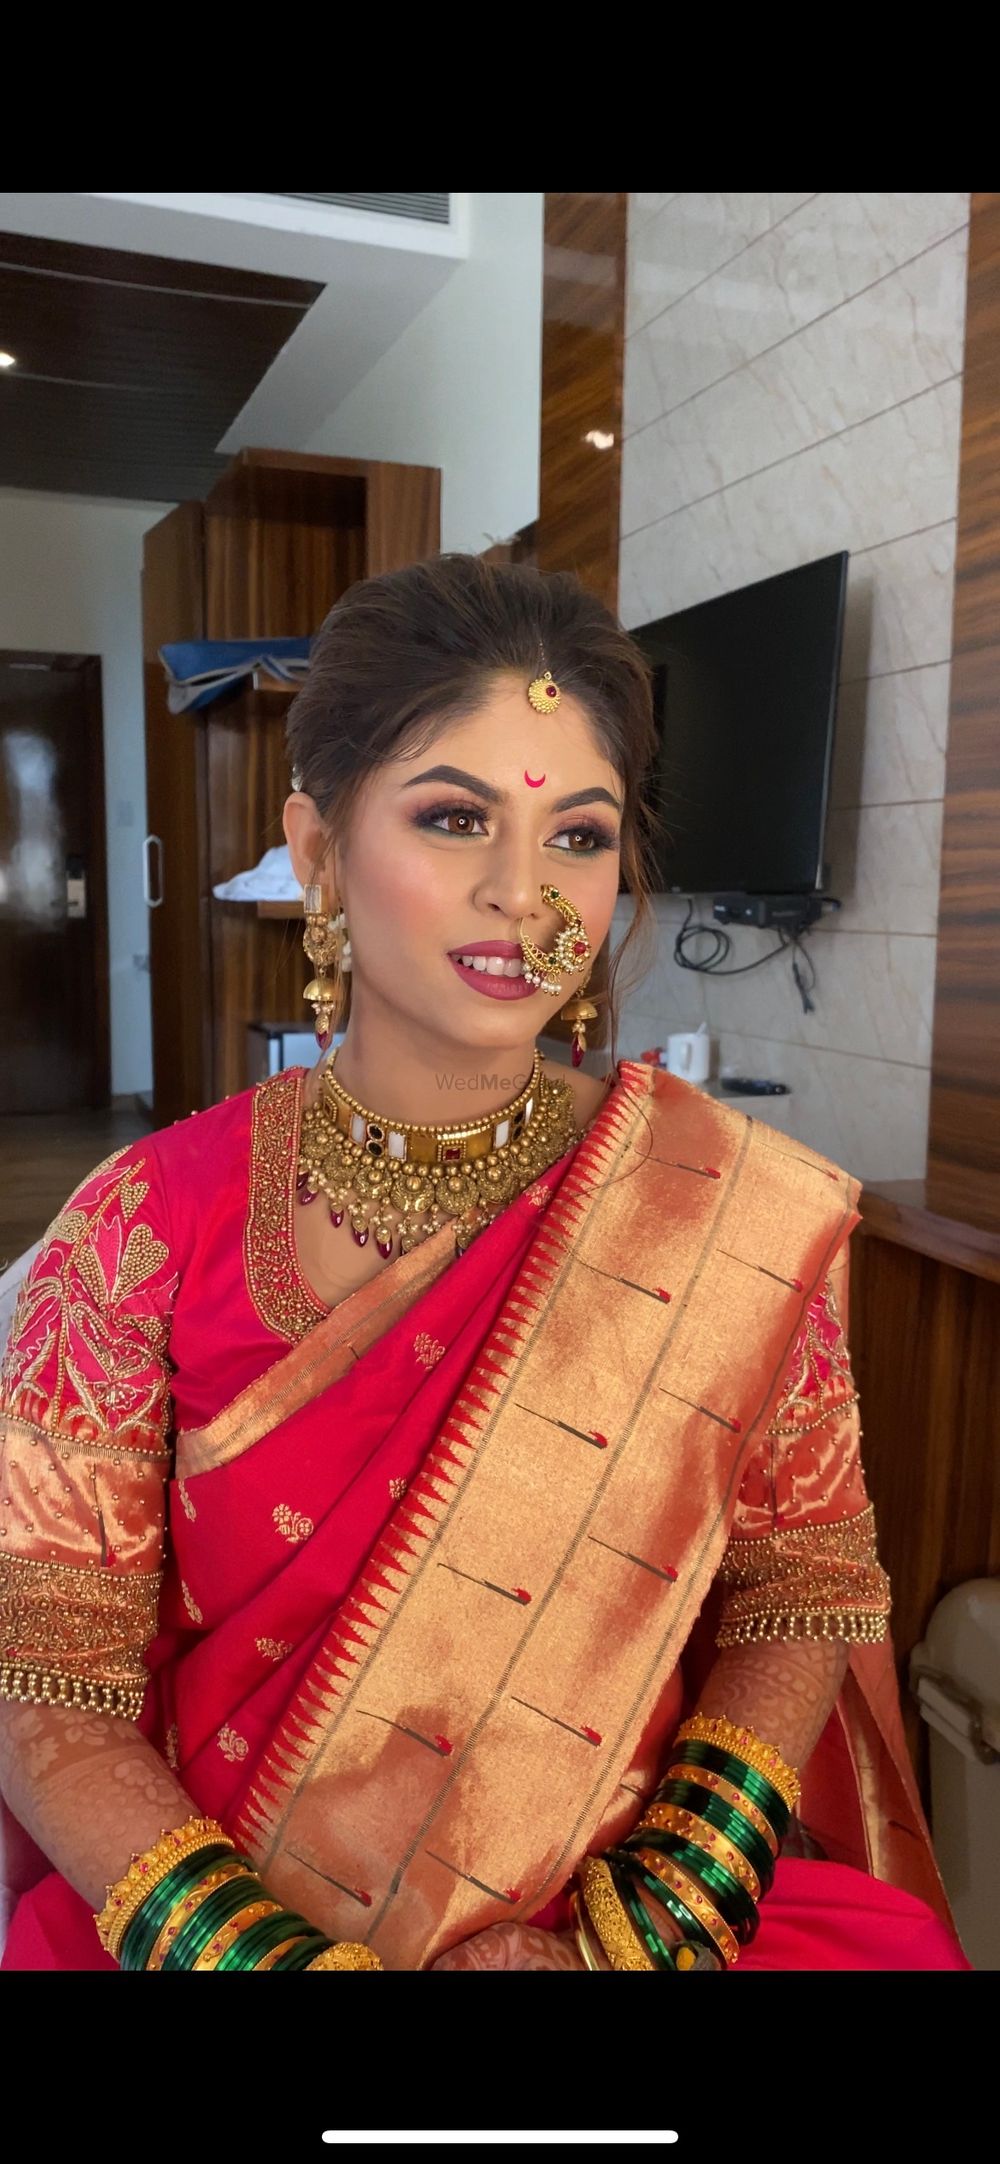 Photo From Maharashtrian brides  - By Komal Kumavat Makeovers